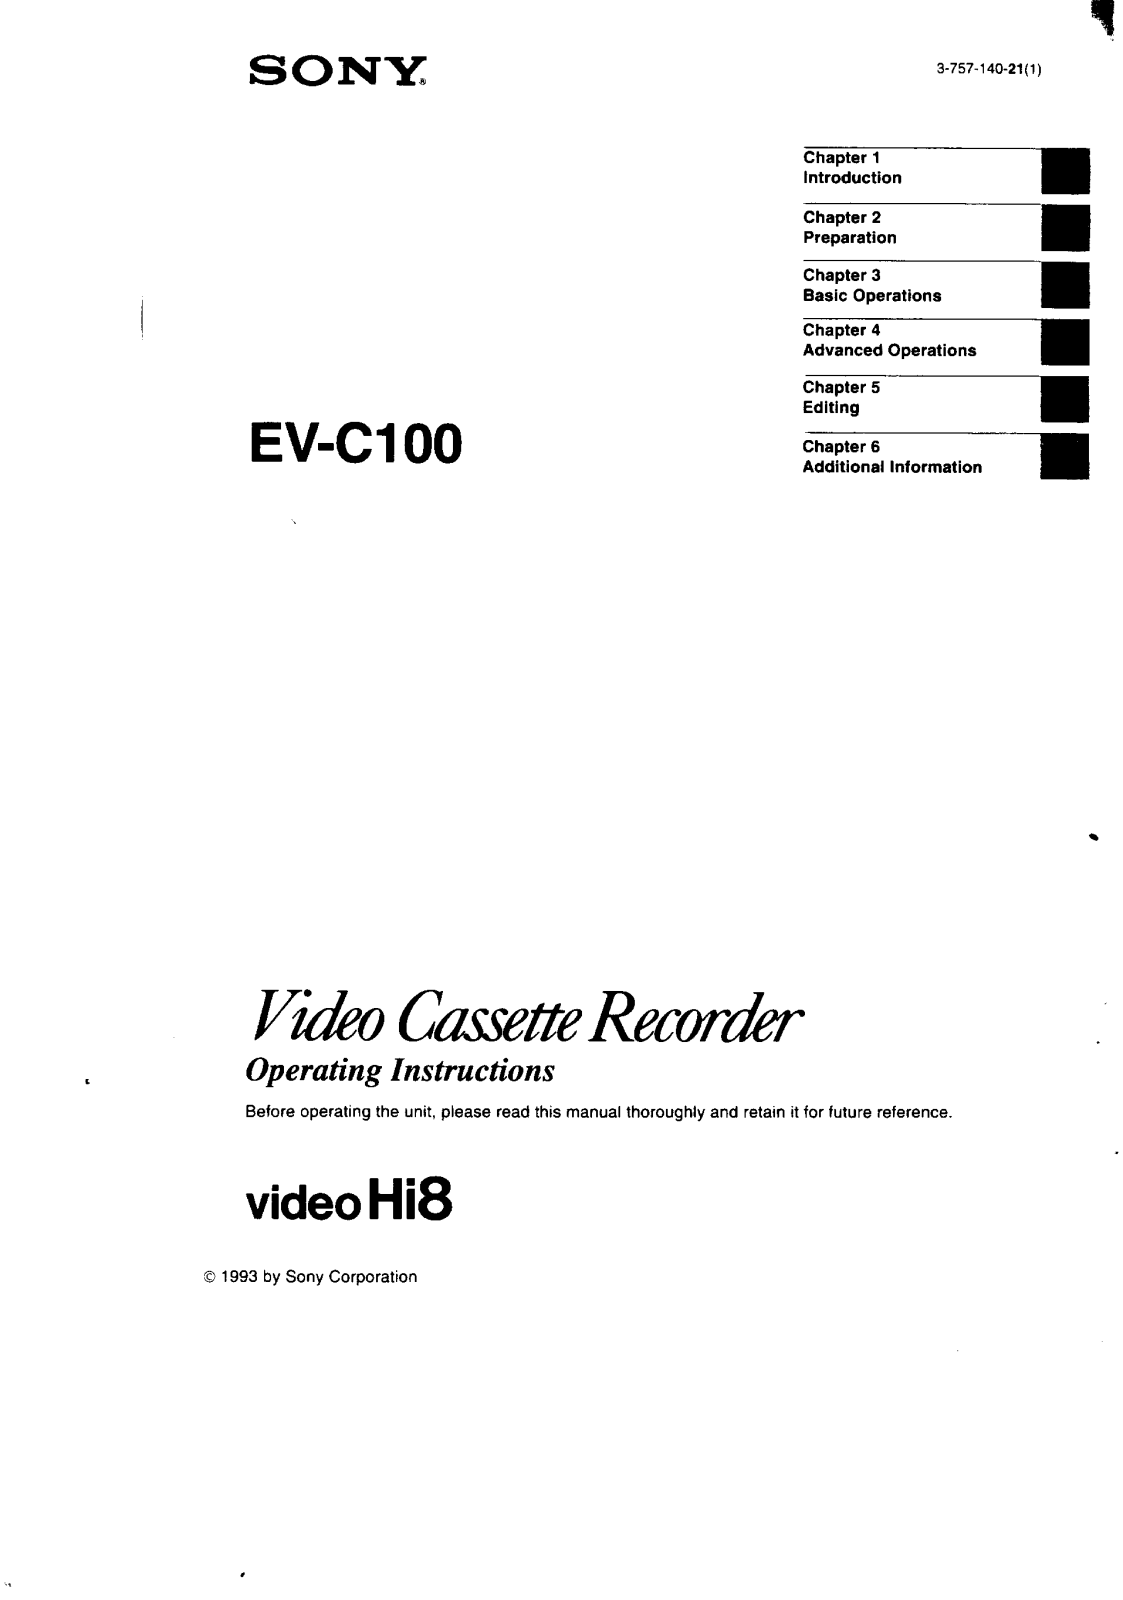 Sony EV-C100 User Manual